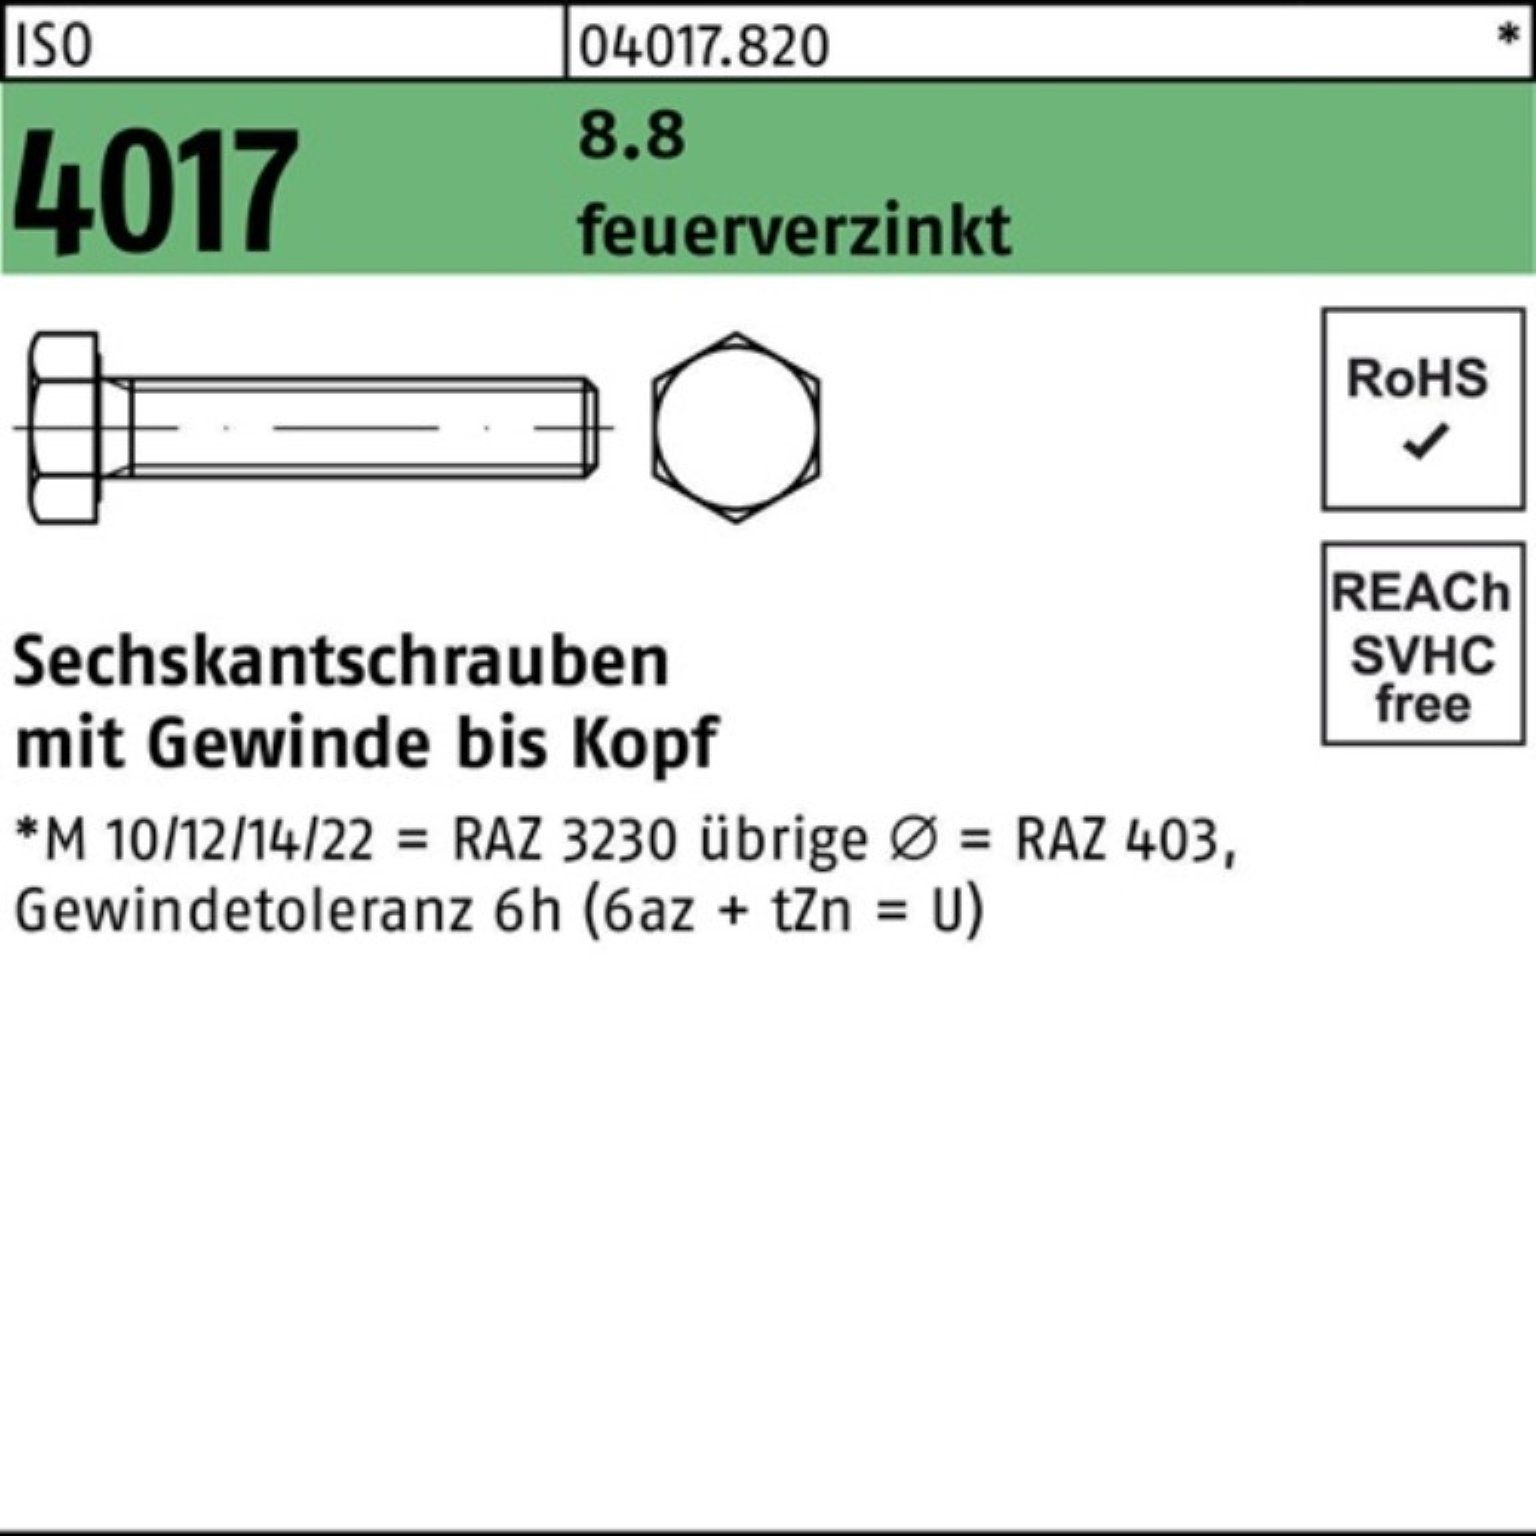 VG feuerverz. 25 Sechskantschraube Bufab M24x 4017 65 St Pack 100er 8.8 ISO Sechskantschraube